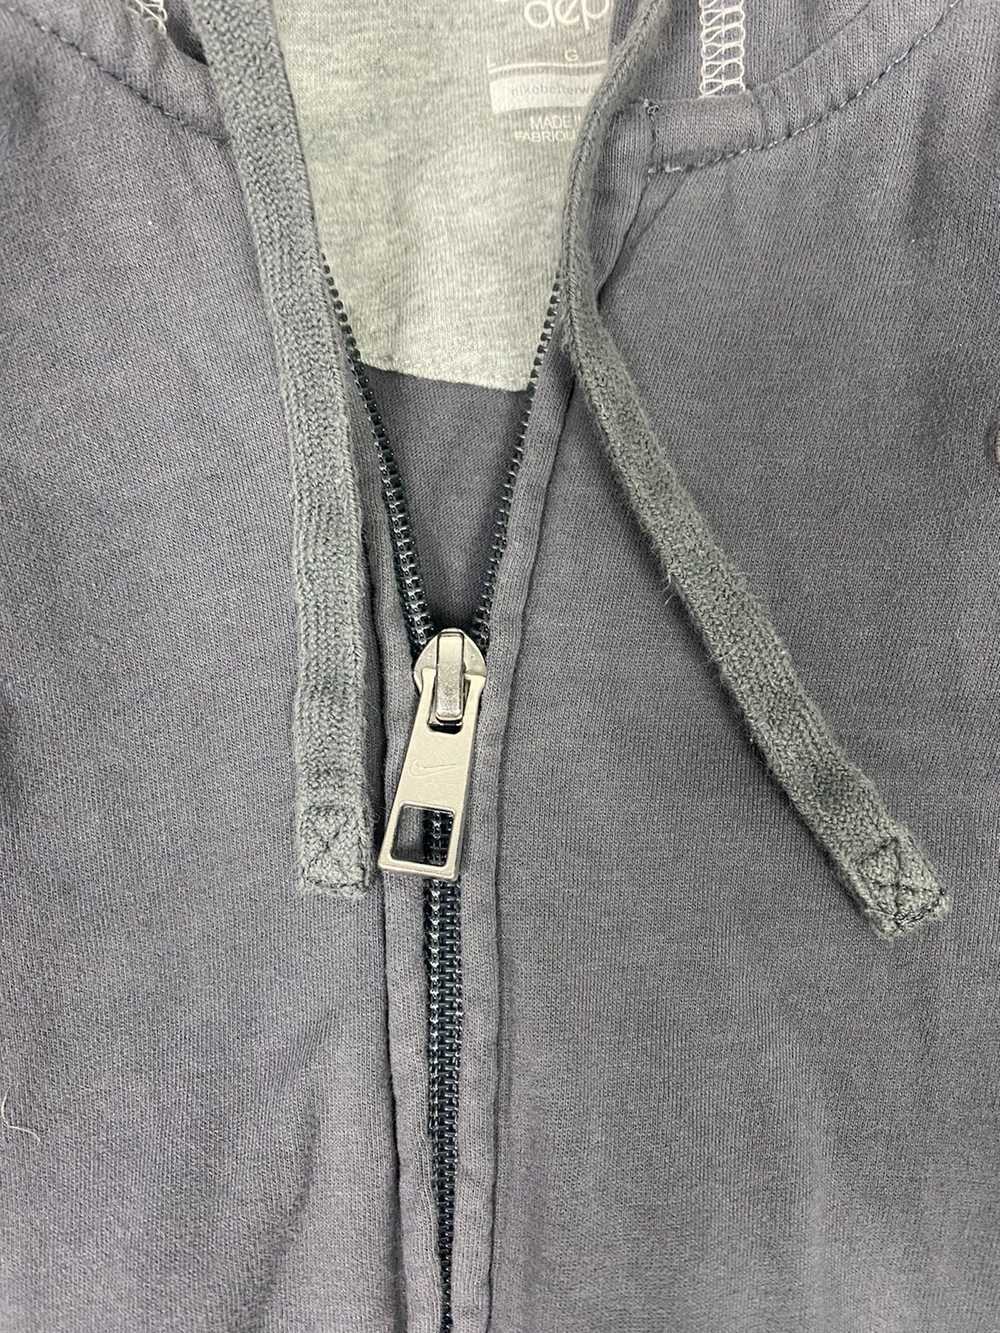 Nike × Streetwear × Vintage Y2k gray nike zip up - image 5